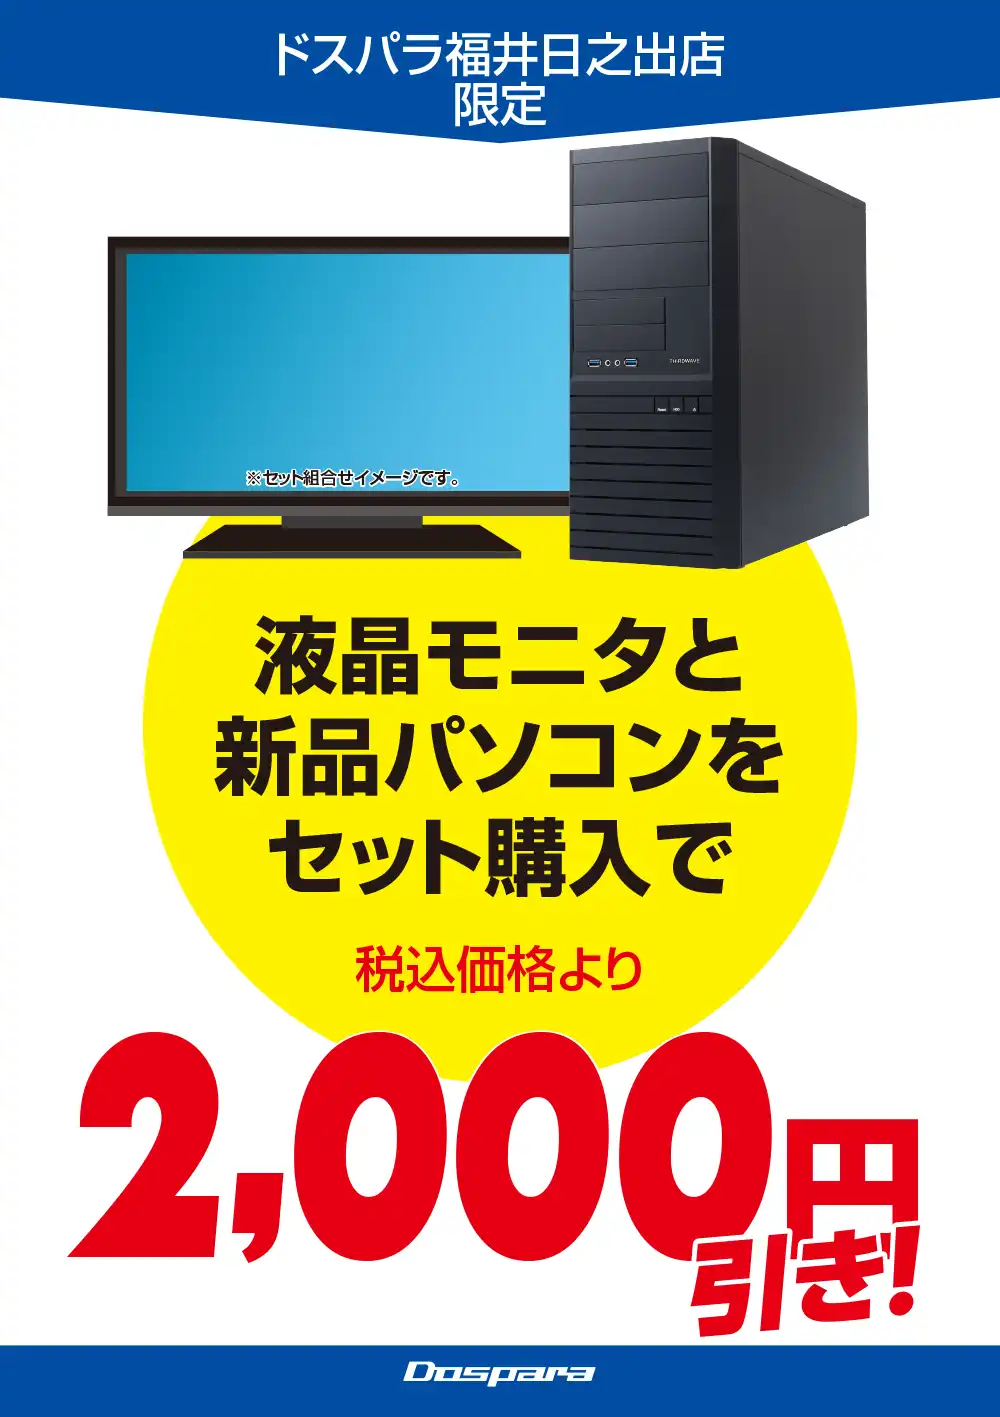 液晶モニタと新品パソコンをセット購入で税込価格より2,000円引き